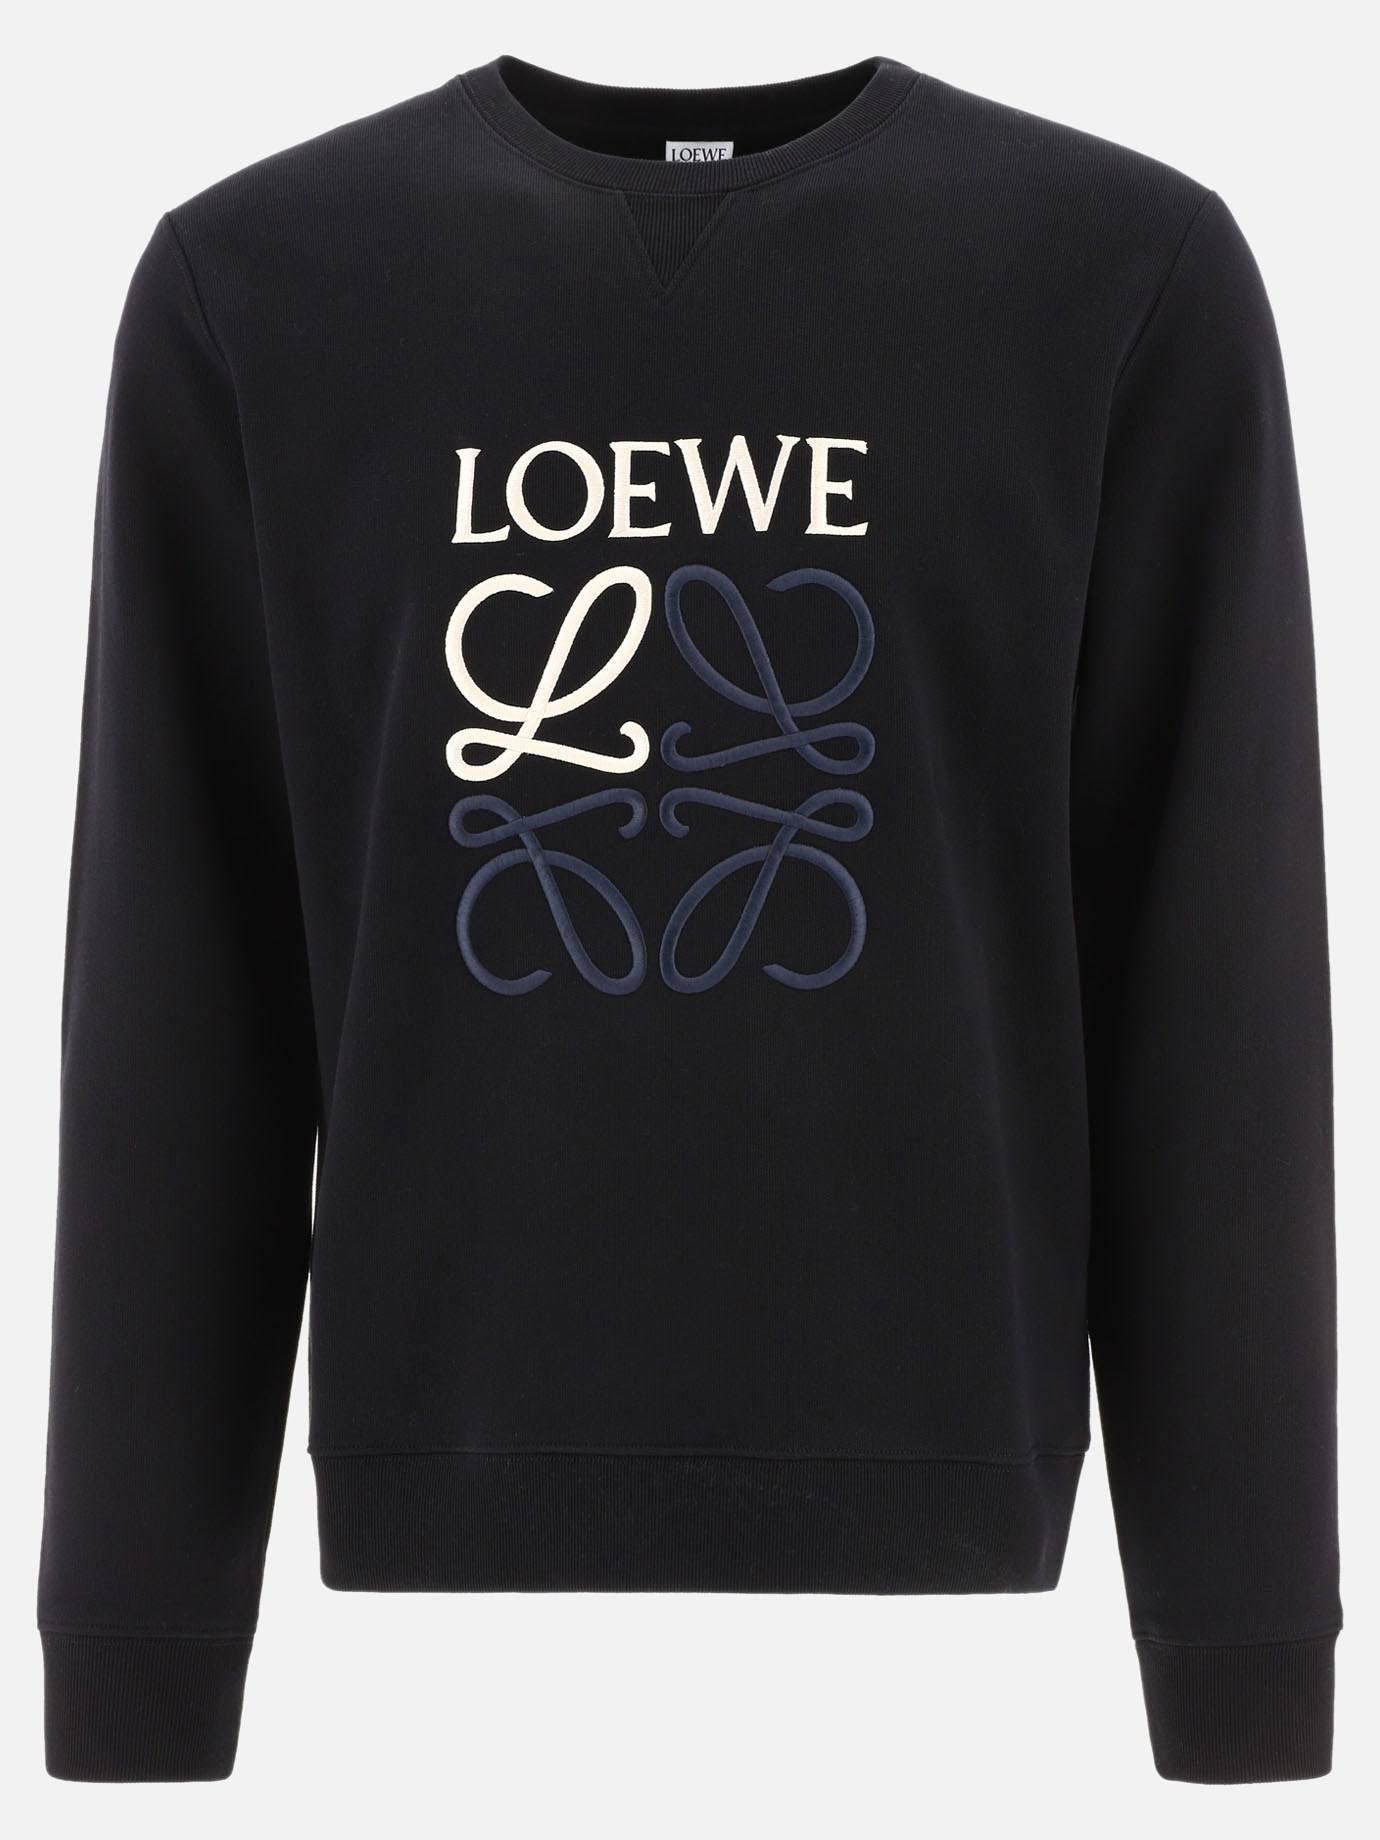  Anagram  sweatshirt by Loewe